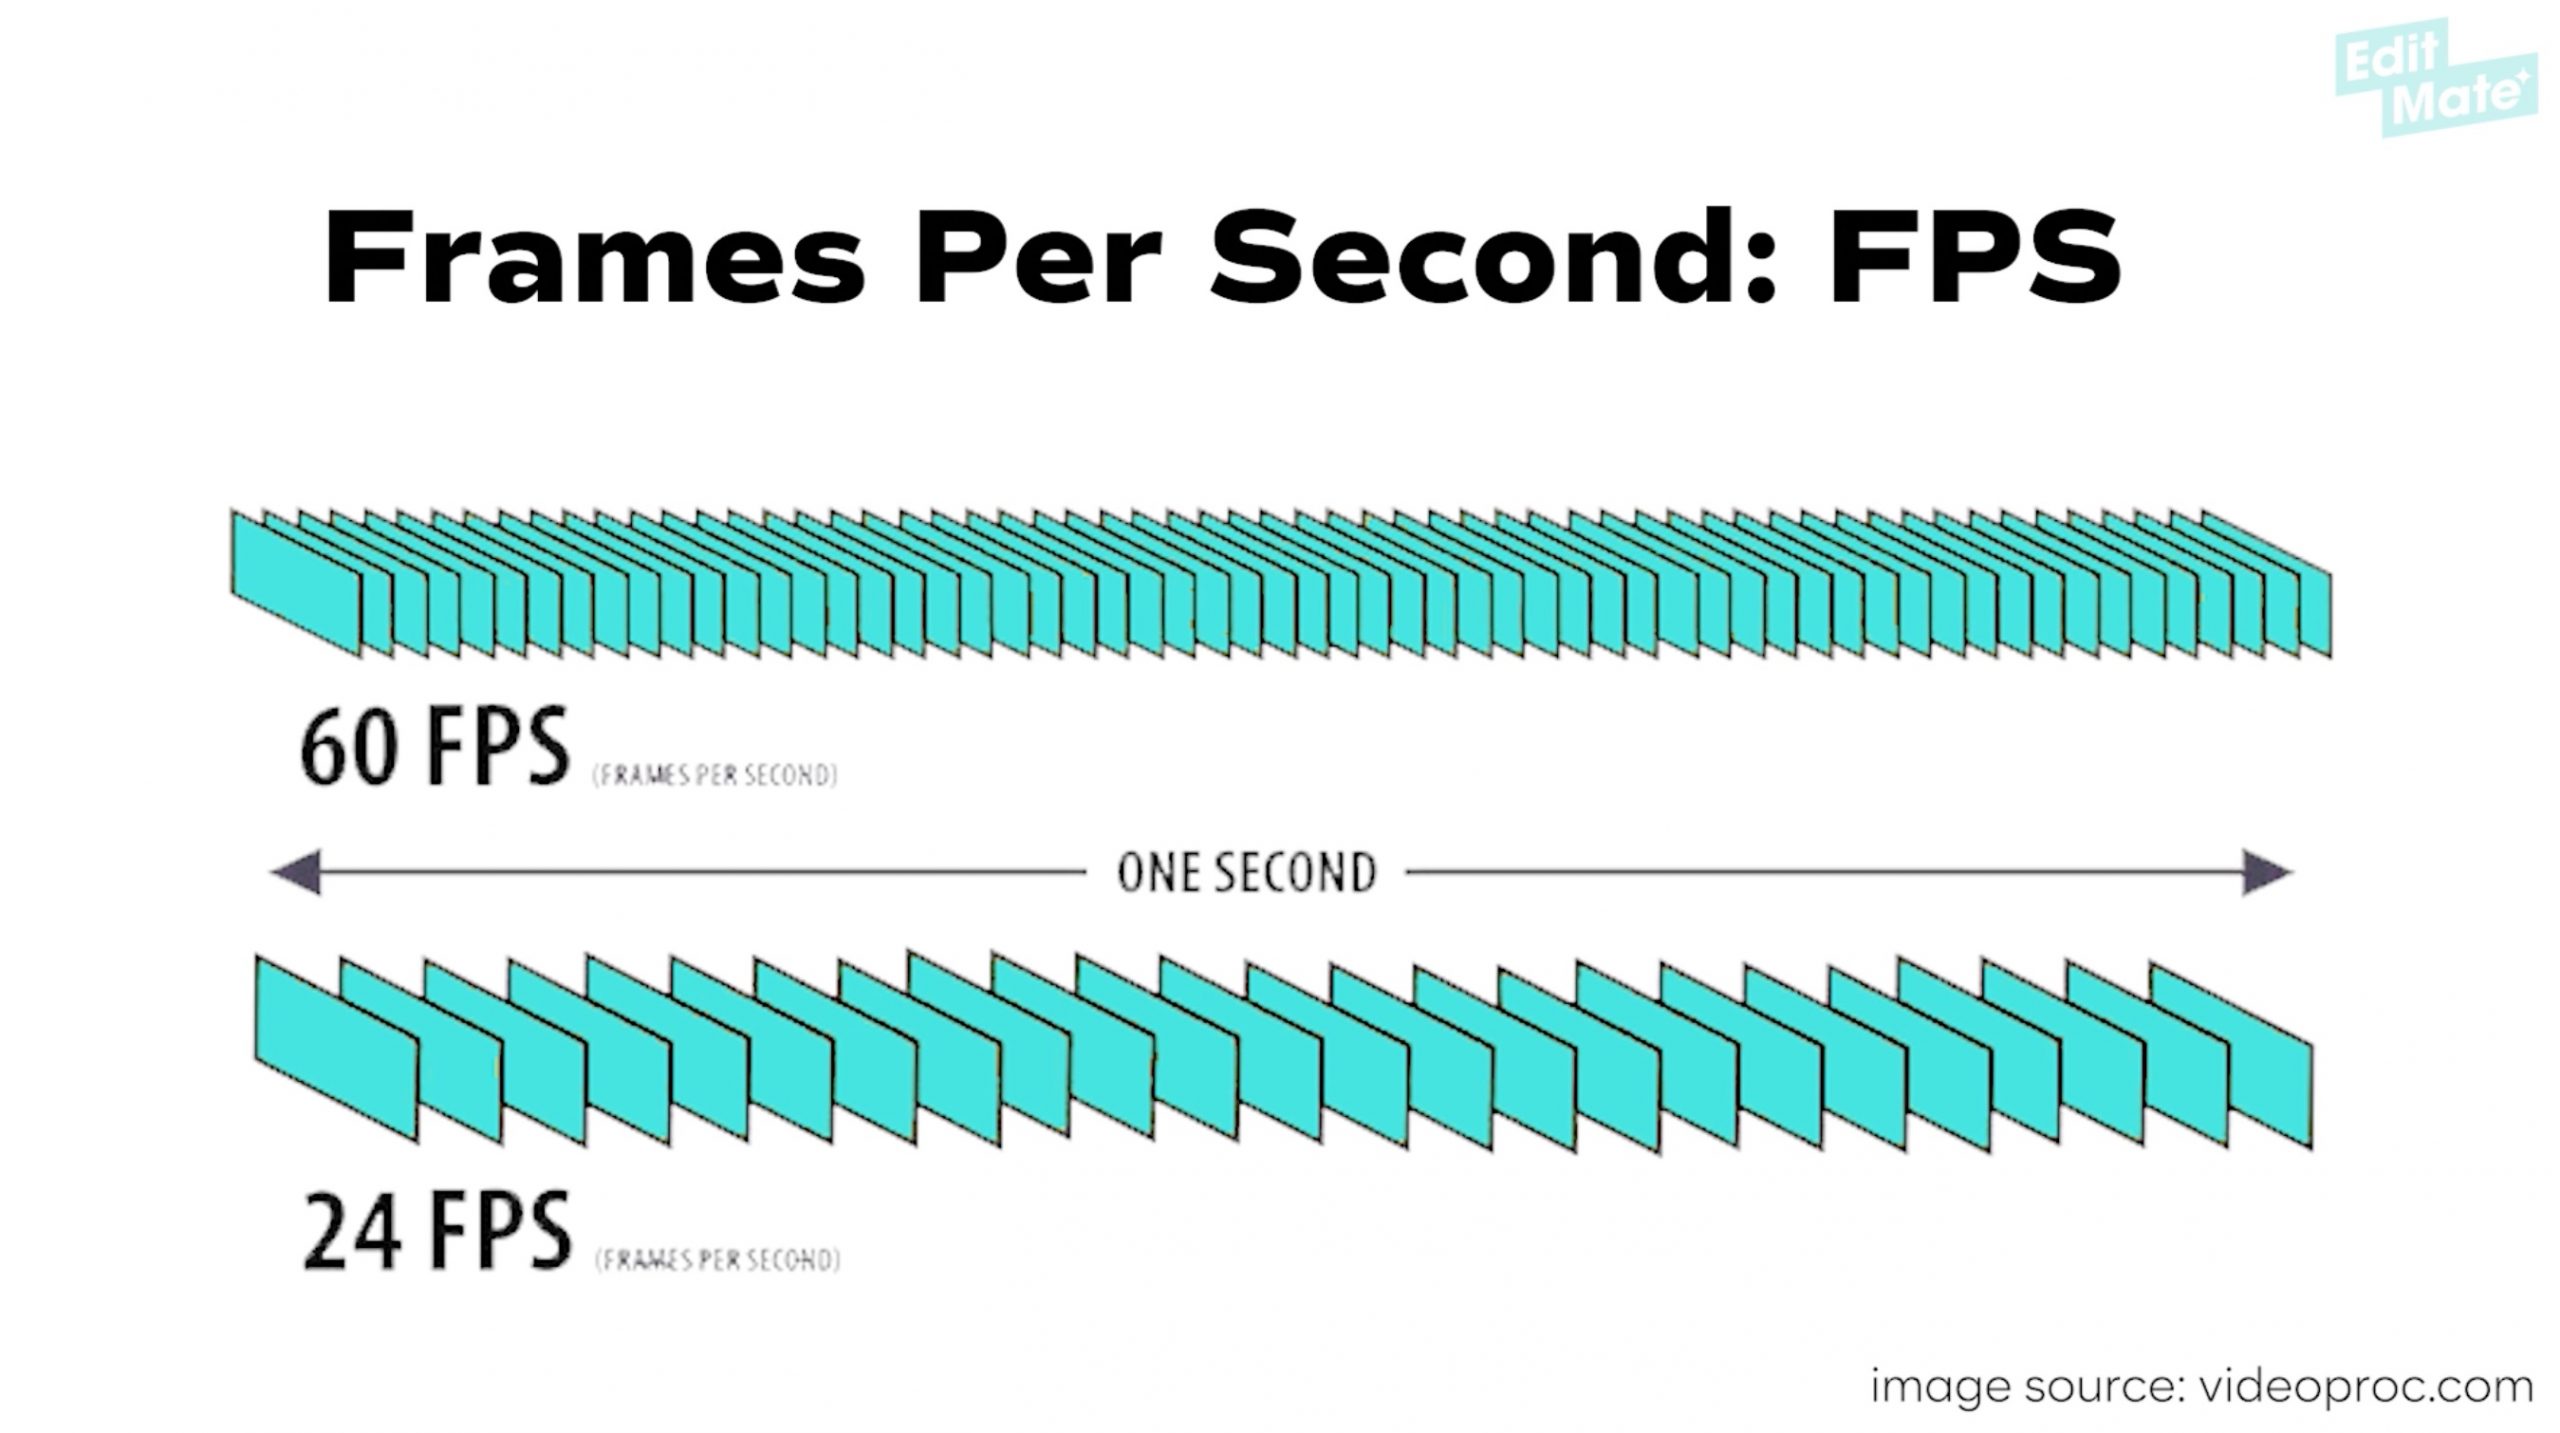 FPS frames per second